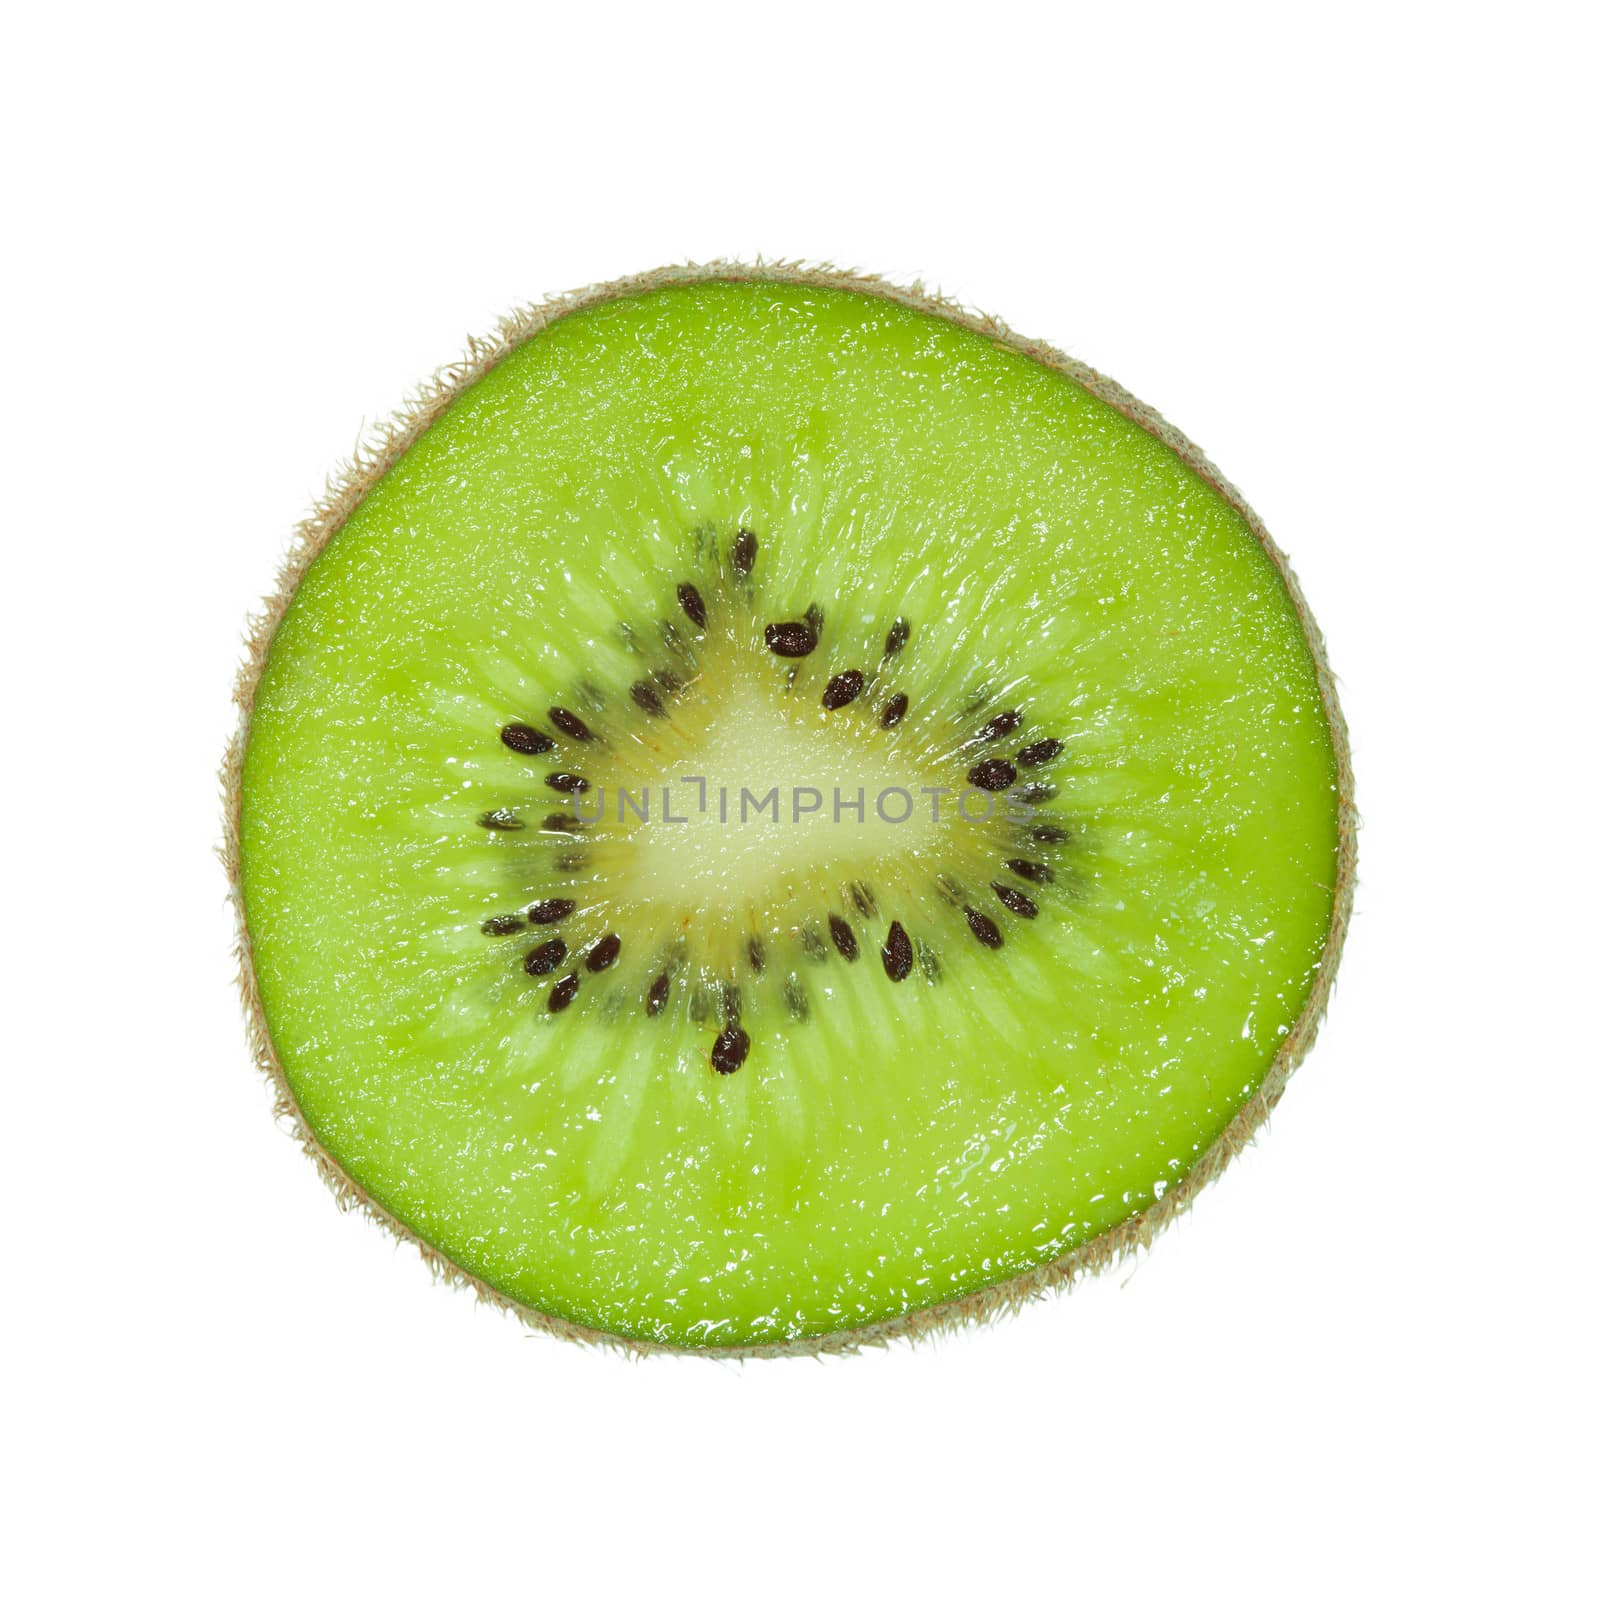 Kiwi fruit isolated on white by foto76